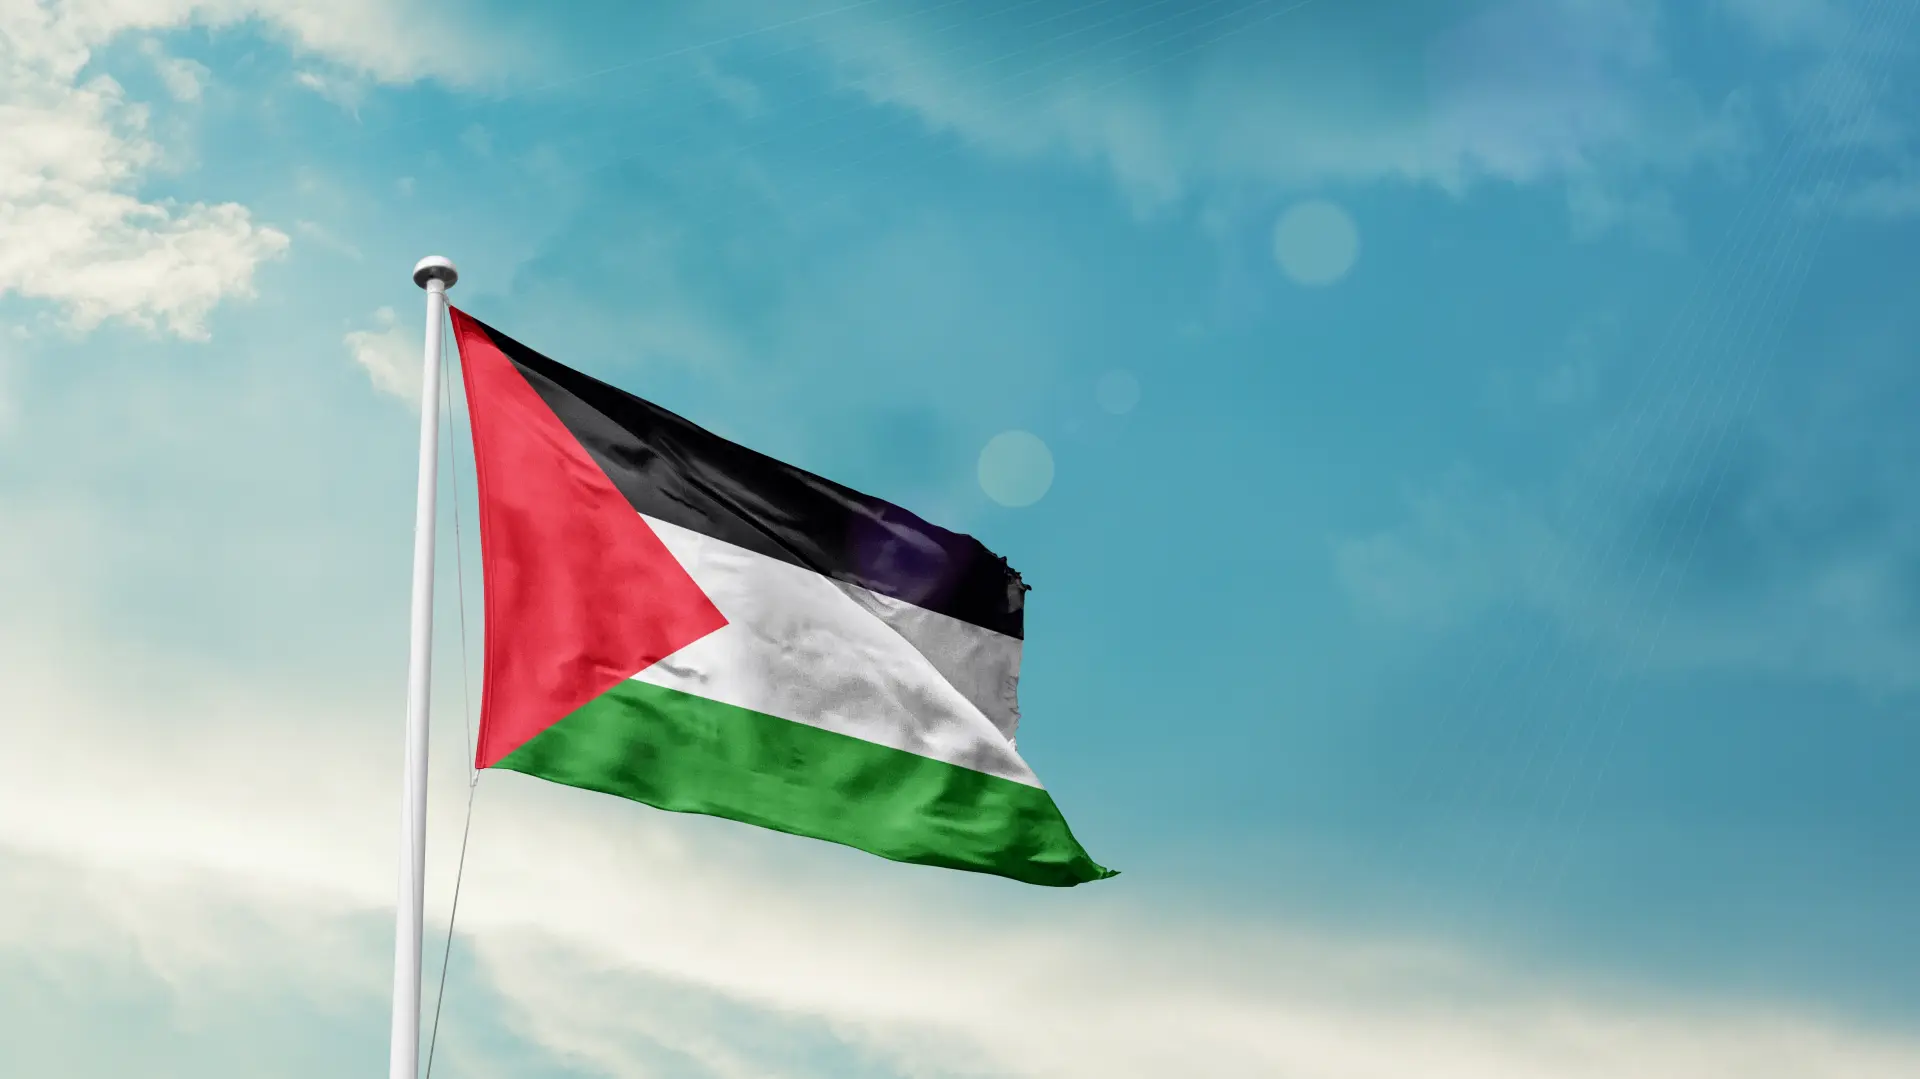 palestina zastava shutterstock-6605a7568bacf.webp